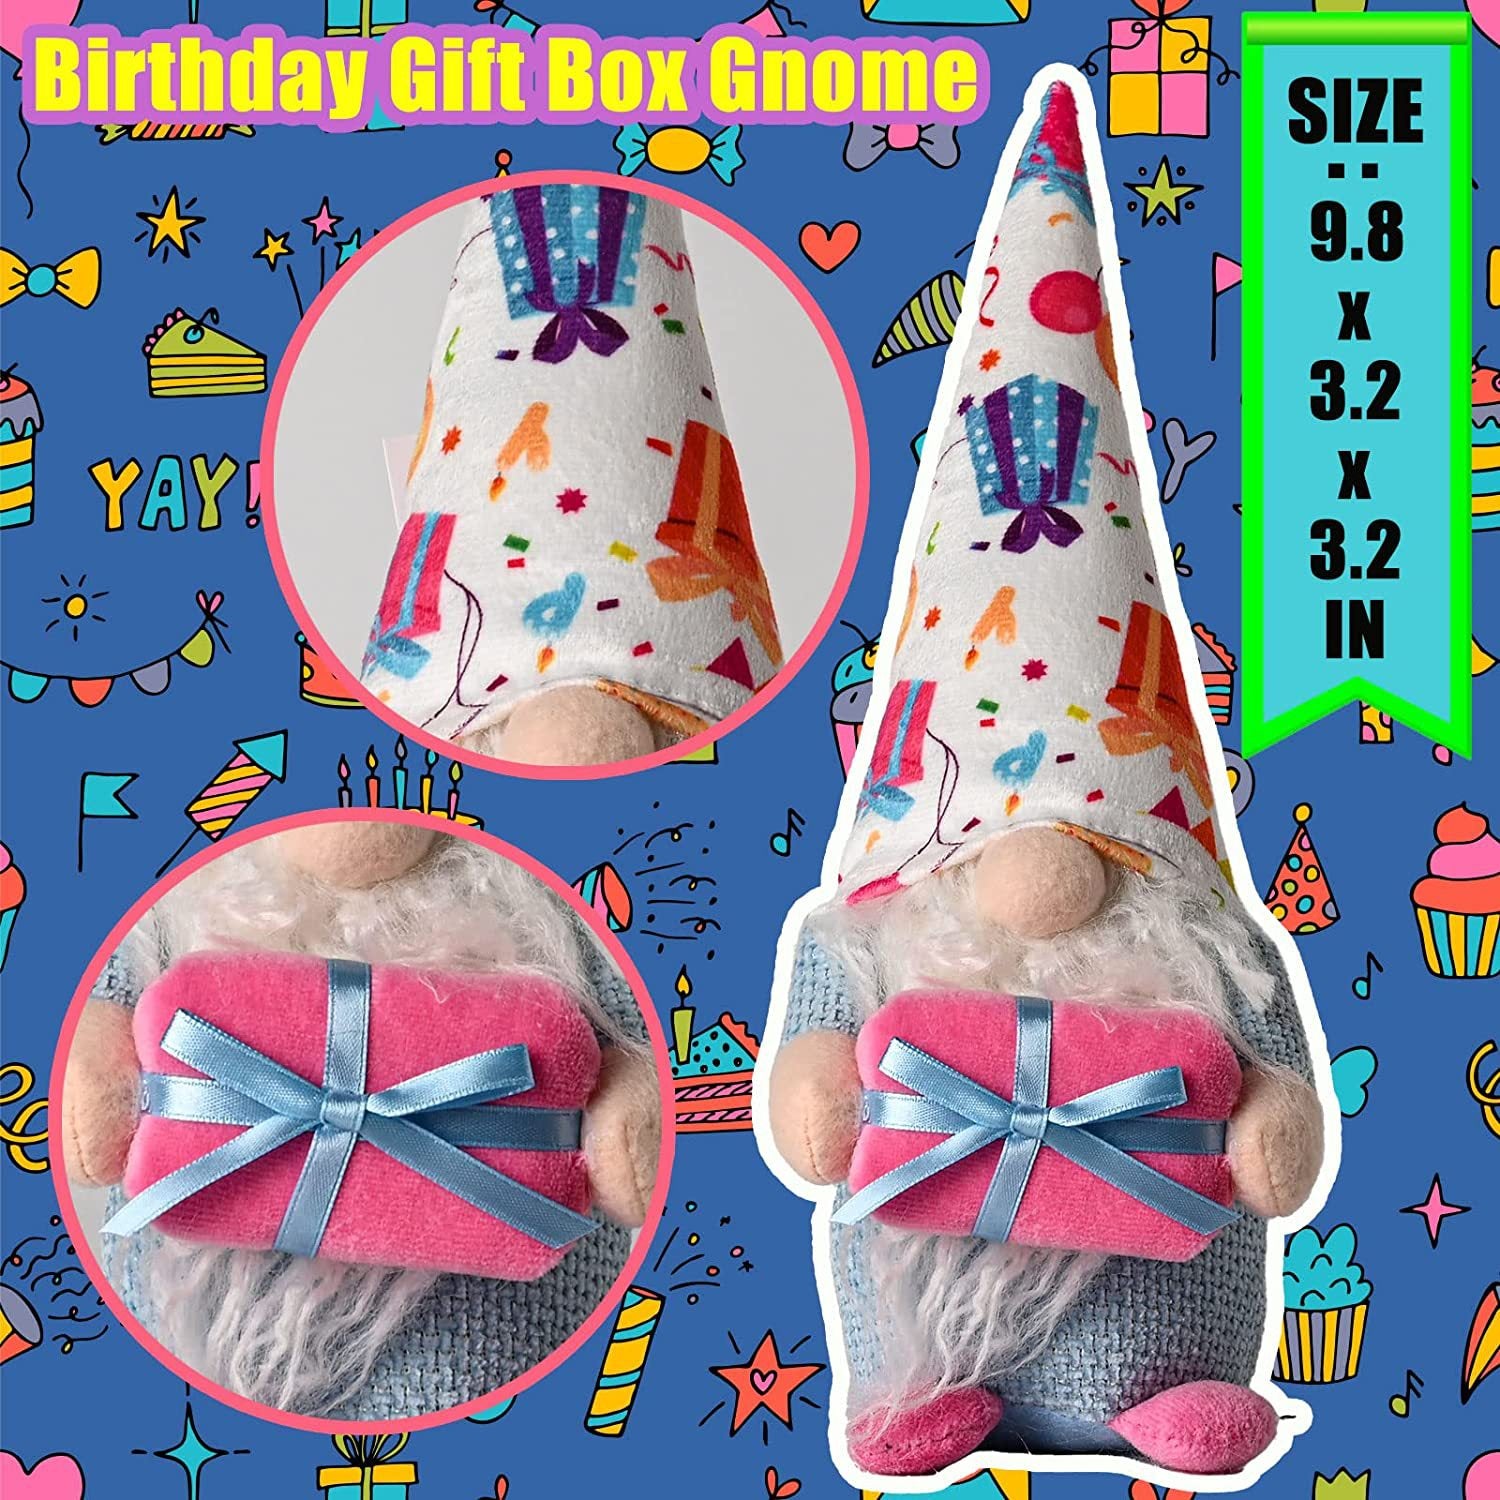 Happy birthday cake gnomes